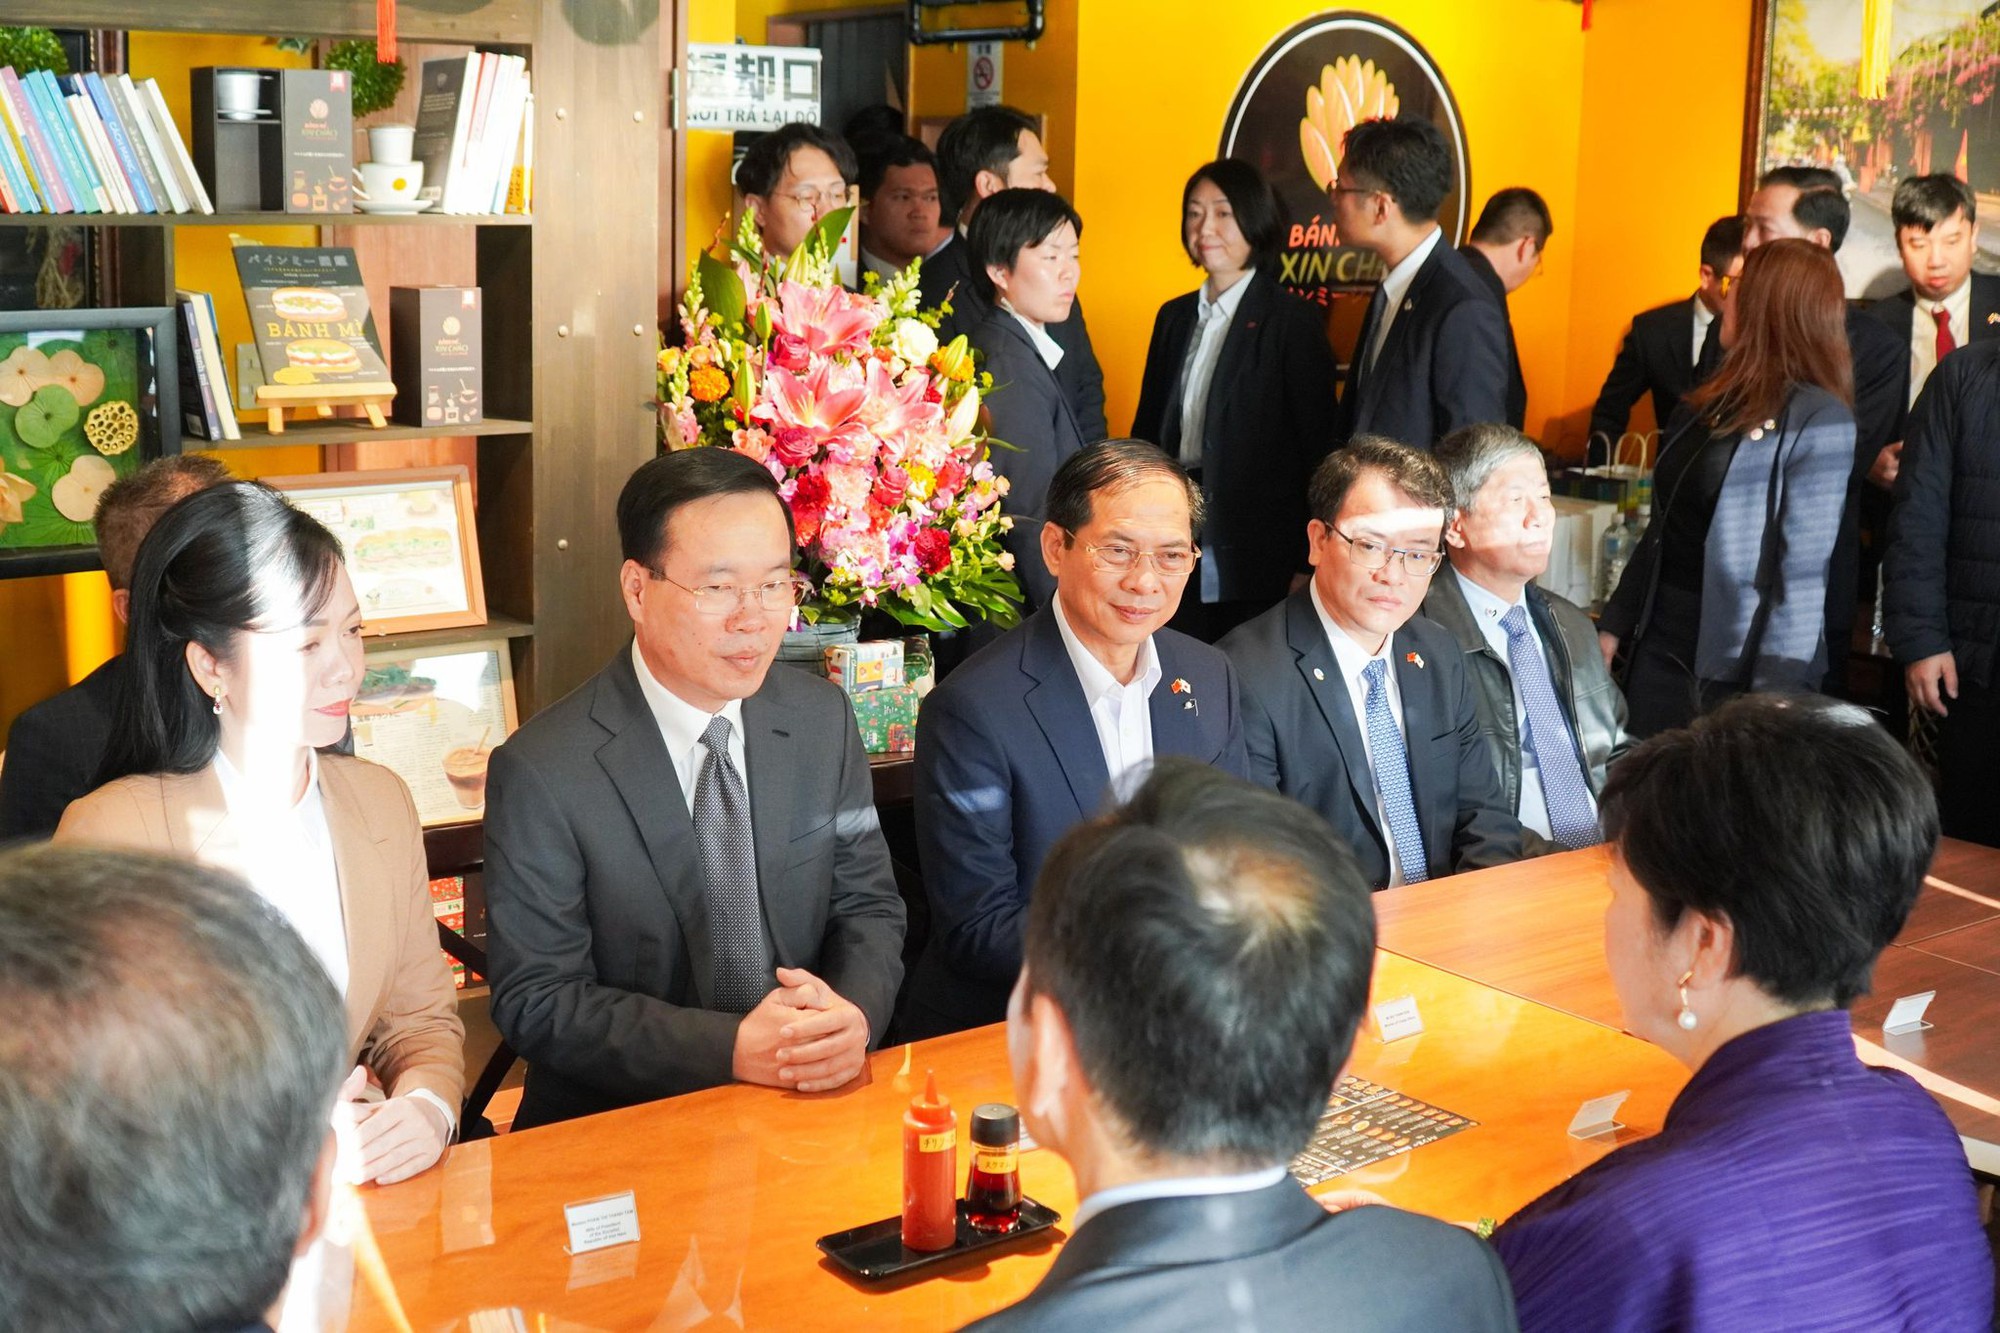 Chủ quán kể chuyện tiếp đón Chủ tịch nước, Thống đốc Tokyo ăn bánh mì Việt Nam - Ảnh 1.